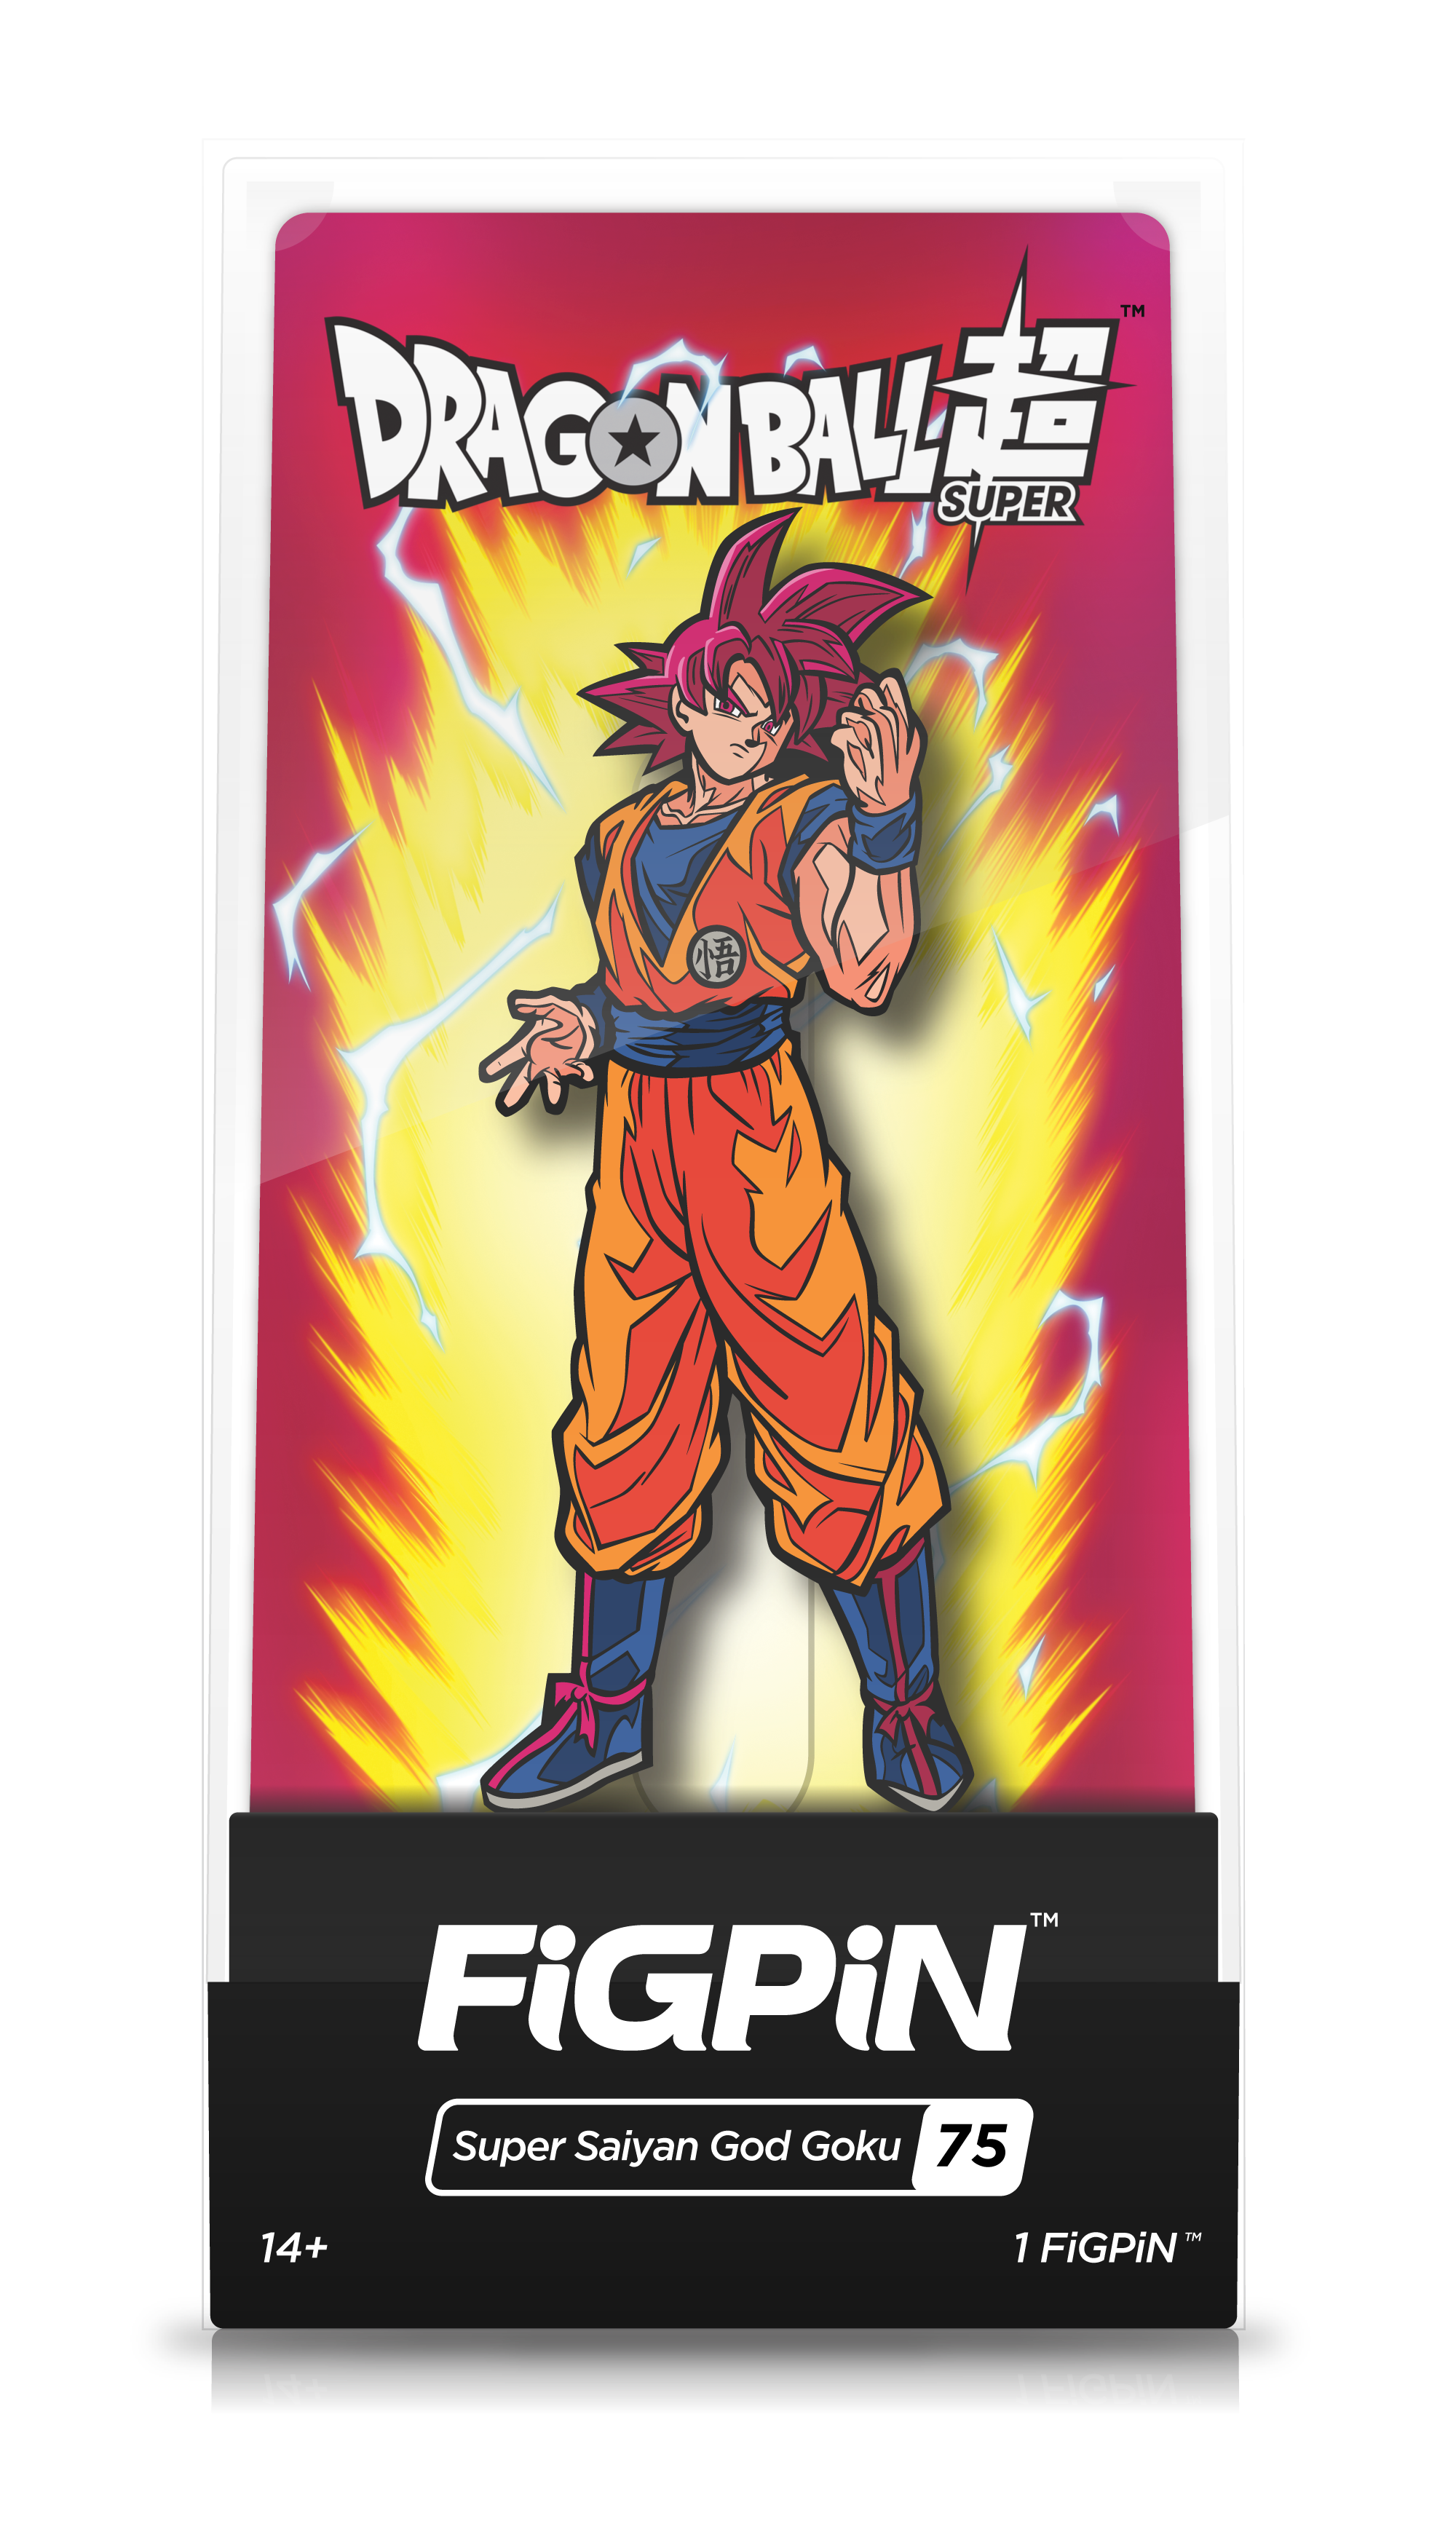 Super Saiyan God Goku (75)